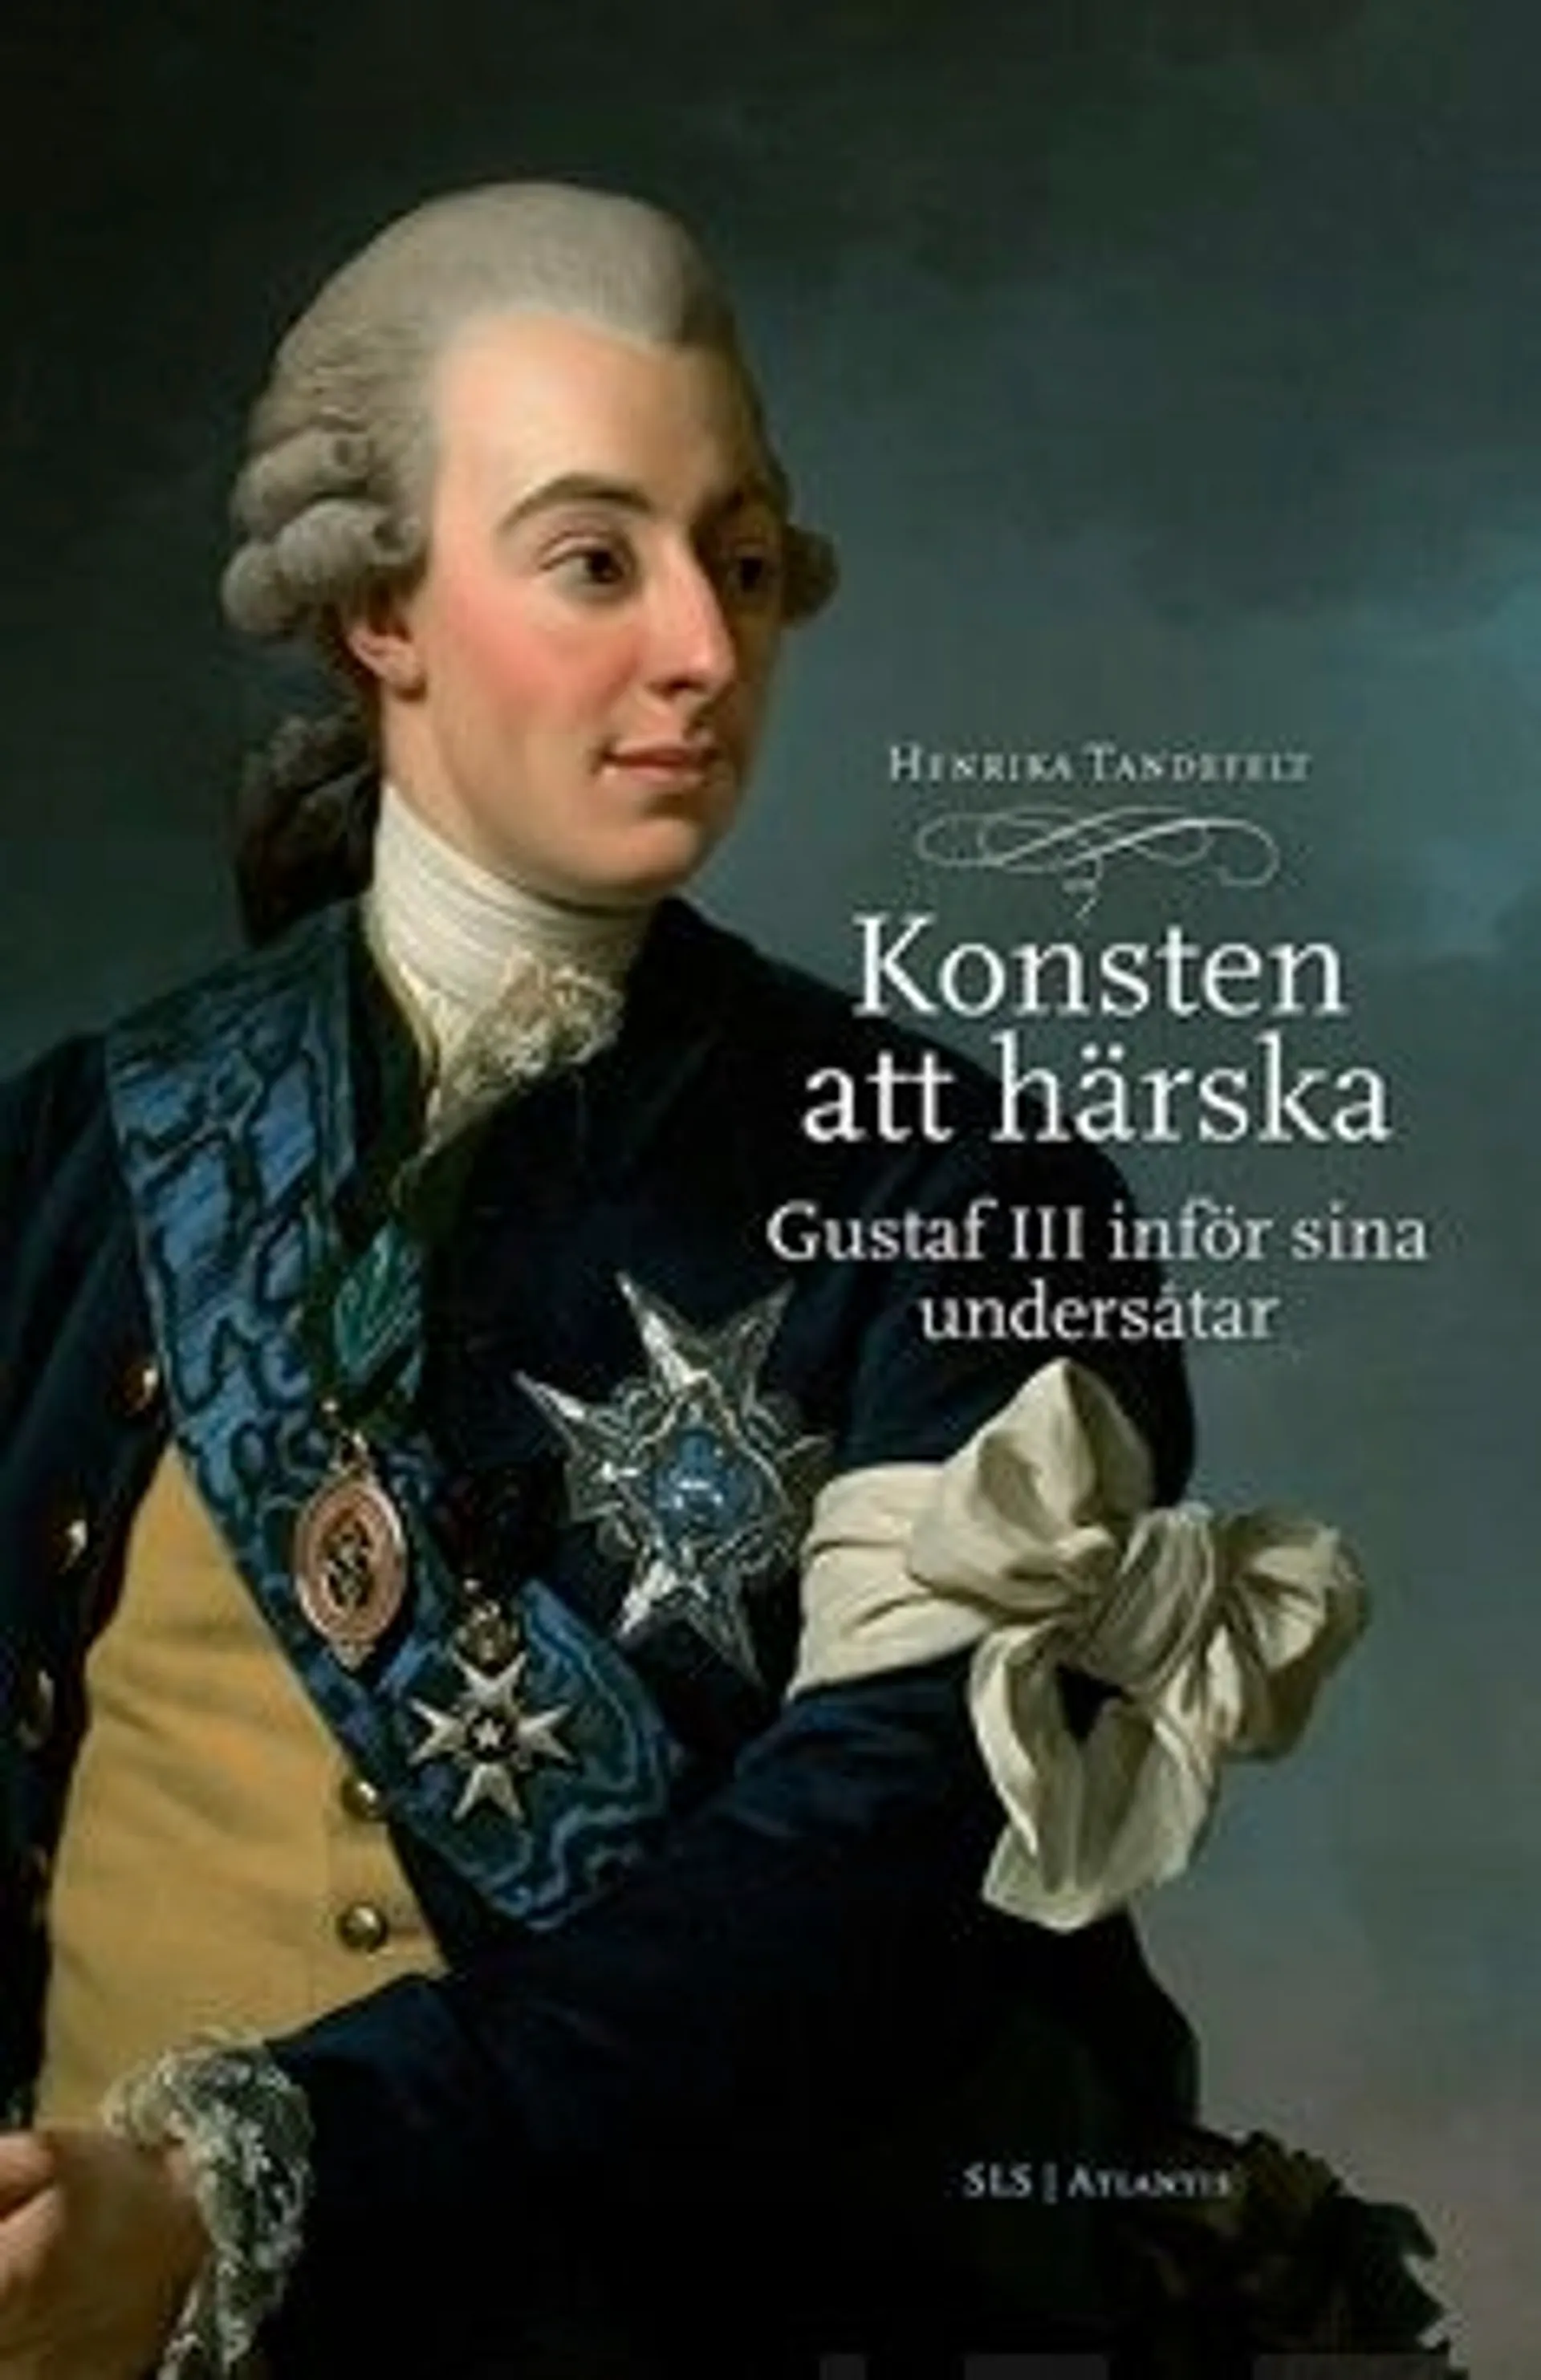 Tandefelt, Konsten att härska - Gustaf III inför sina undersåtar